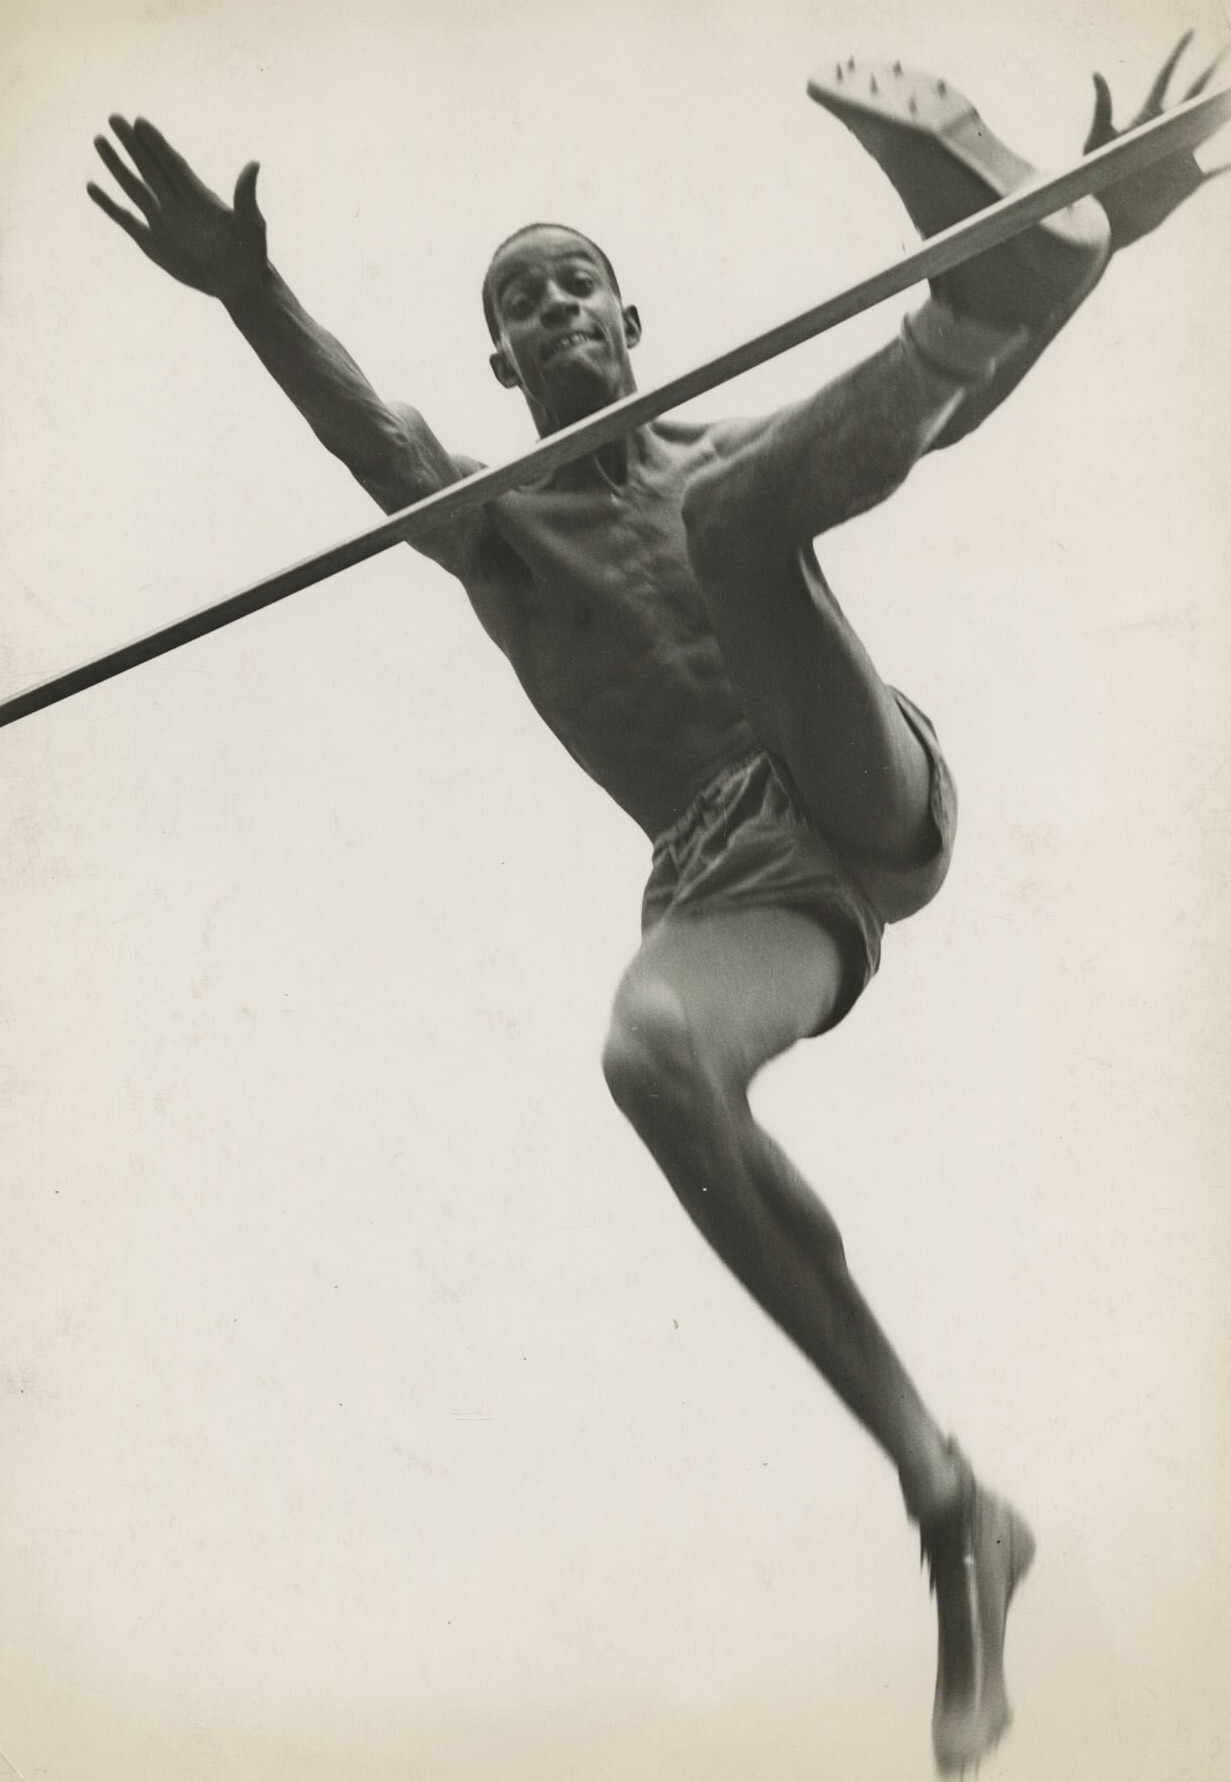 Корнелиус Джонсон, первый чернокожий спортсмен, завоевавший золотую медаль на Олимпийских играх 1936 года в Берлине, обладатель мирового рекорда в прыжках в высоту. Фотограф Маргарет Бурк-Уайт